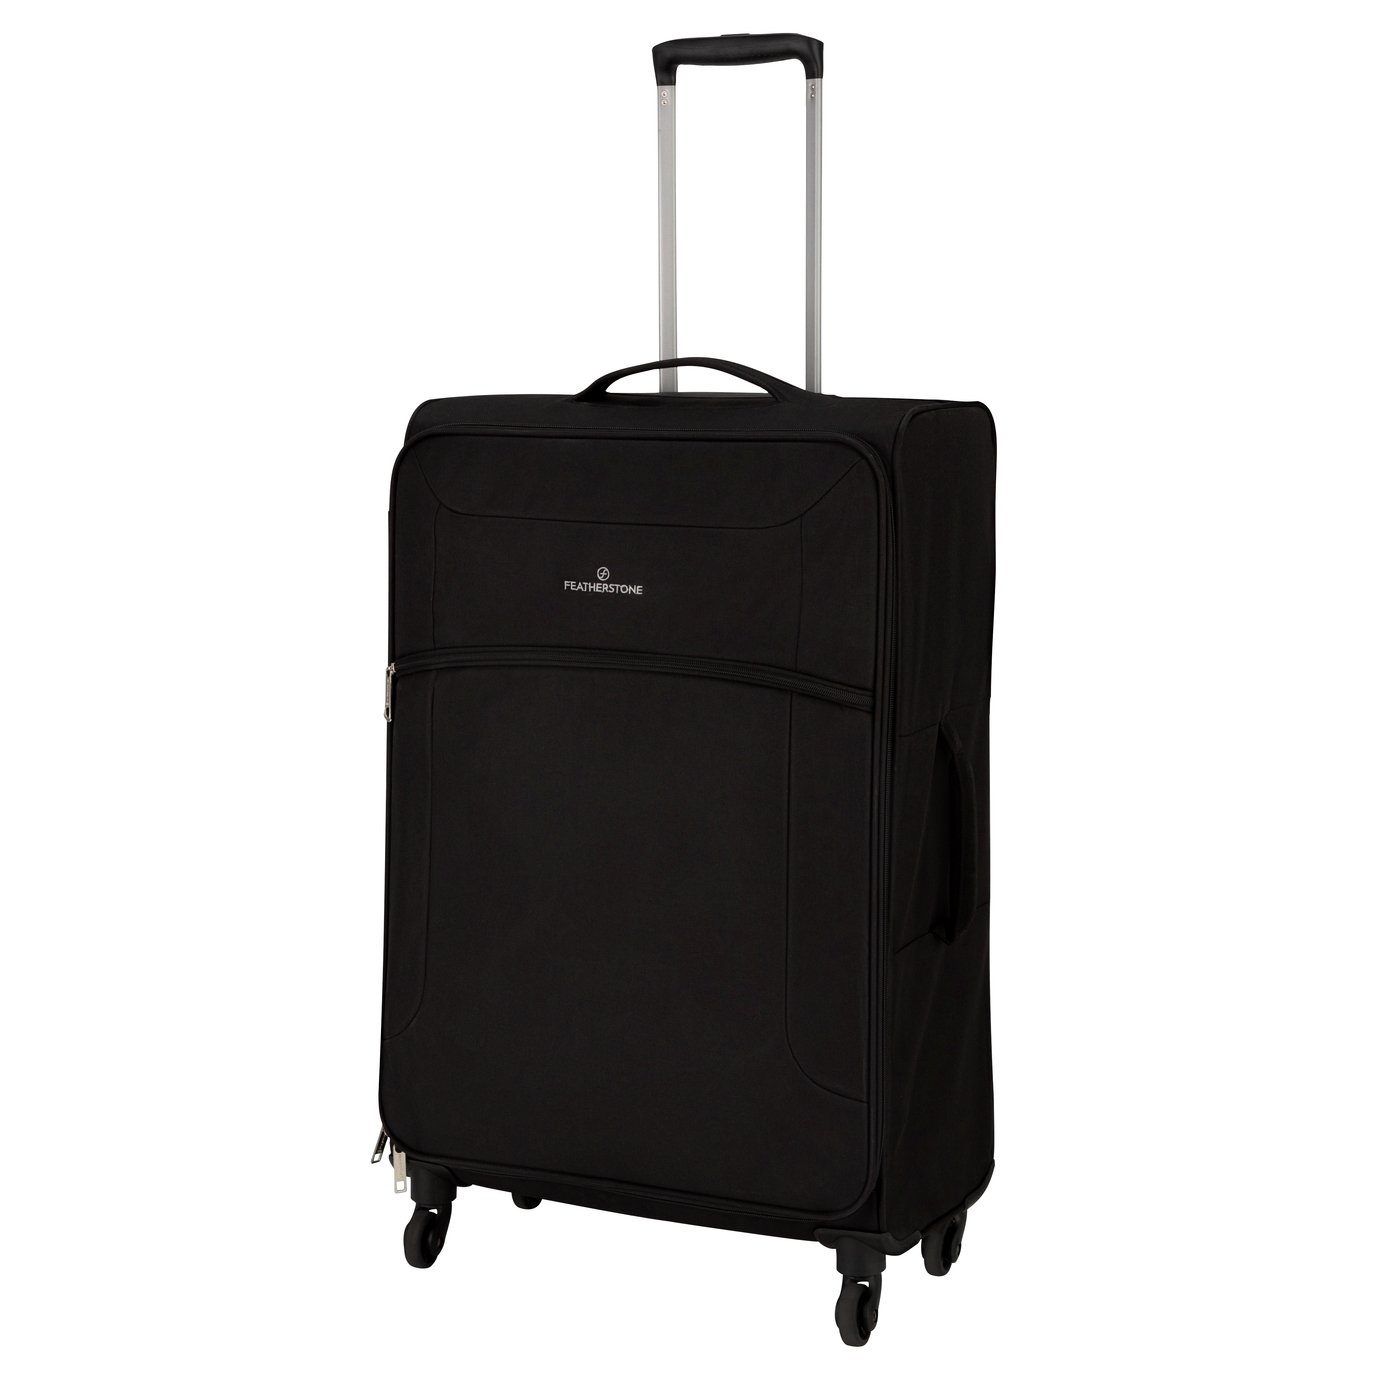 Featherstone 4 Wheel Soft Large Suitcase - Black